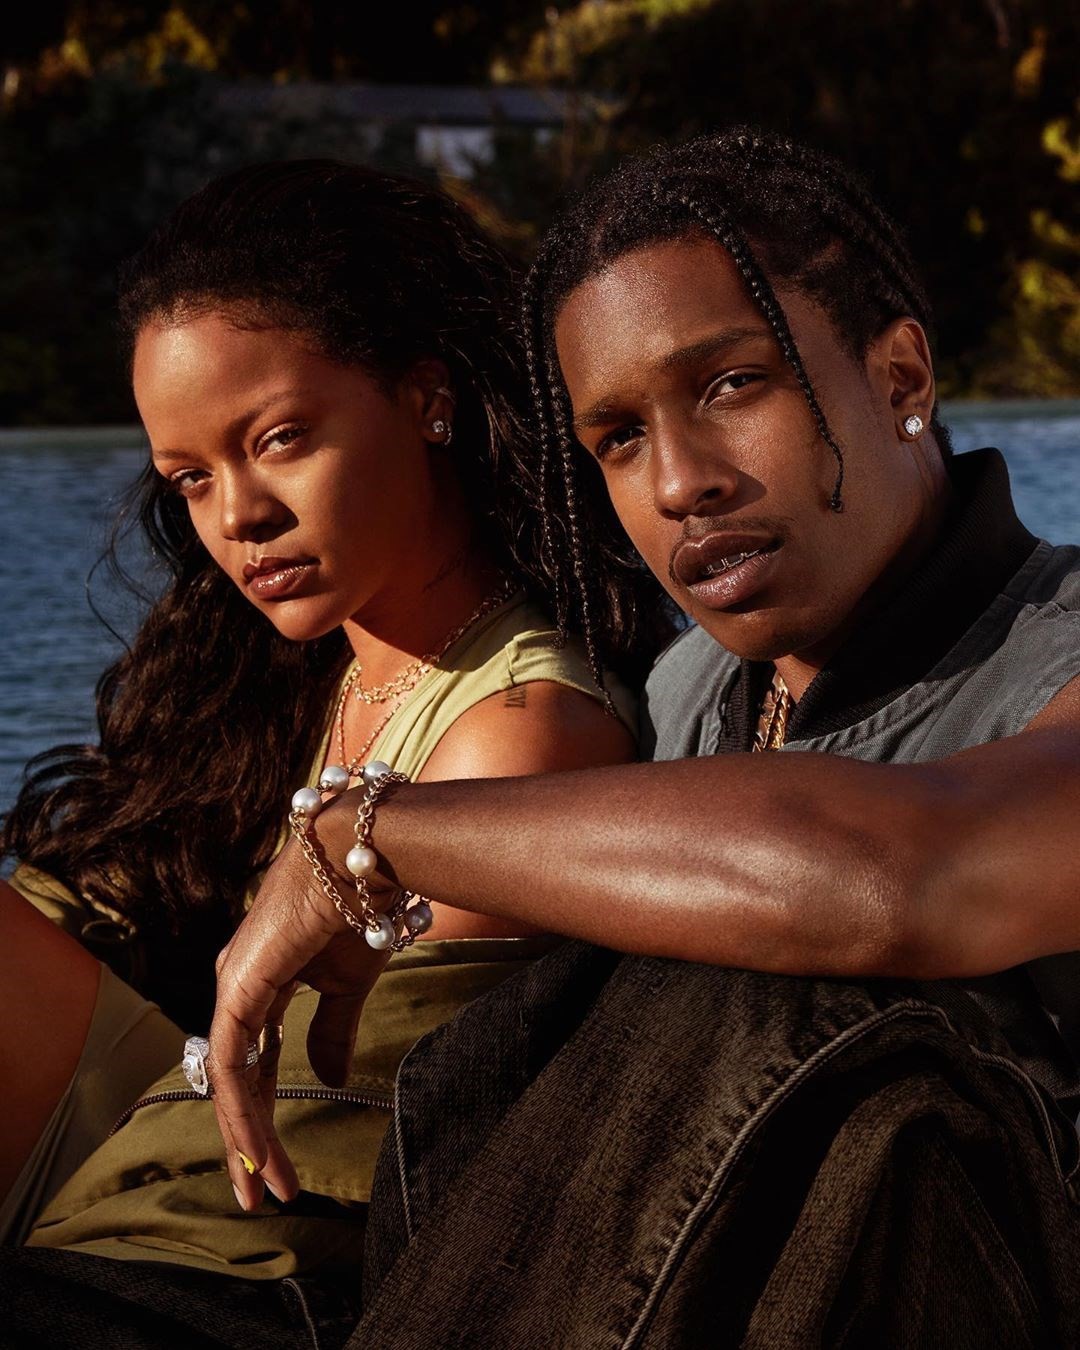 Mới chia tay tỷ phú, Rihanna đã hẹn hò tình mới với danh tính bất ngờ: Thì ra là rapper quyền lực, còn tự xác nhận vì 7 năm chịu kiếp “friendzone” - Ảnh 3.